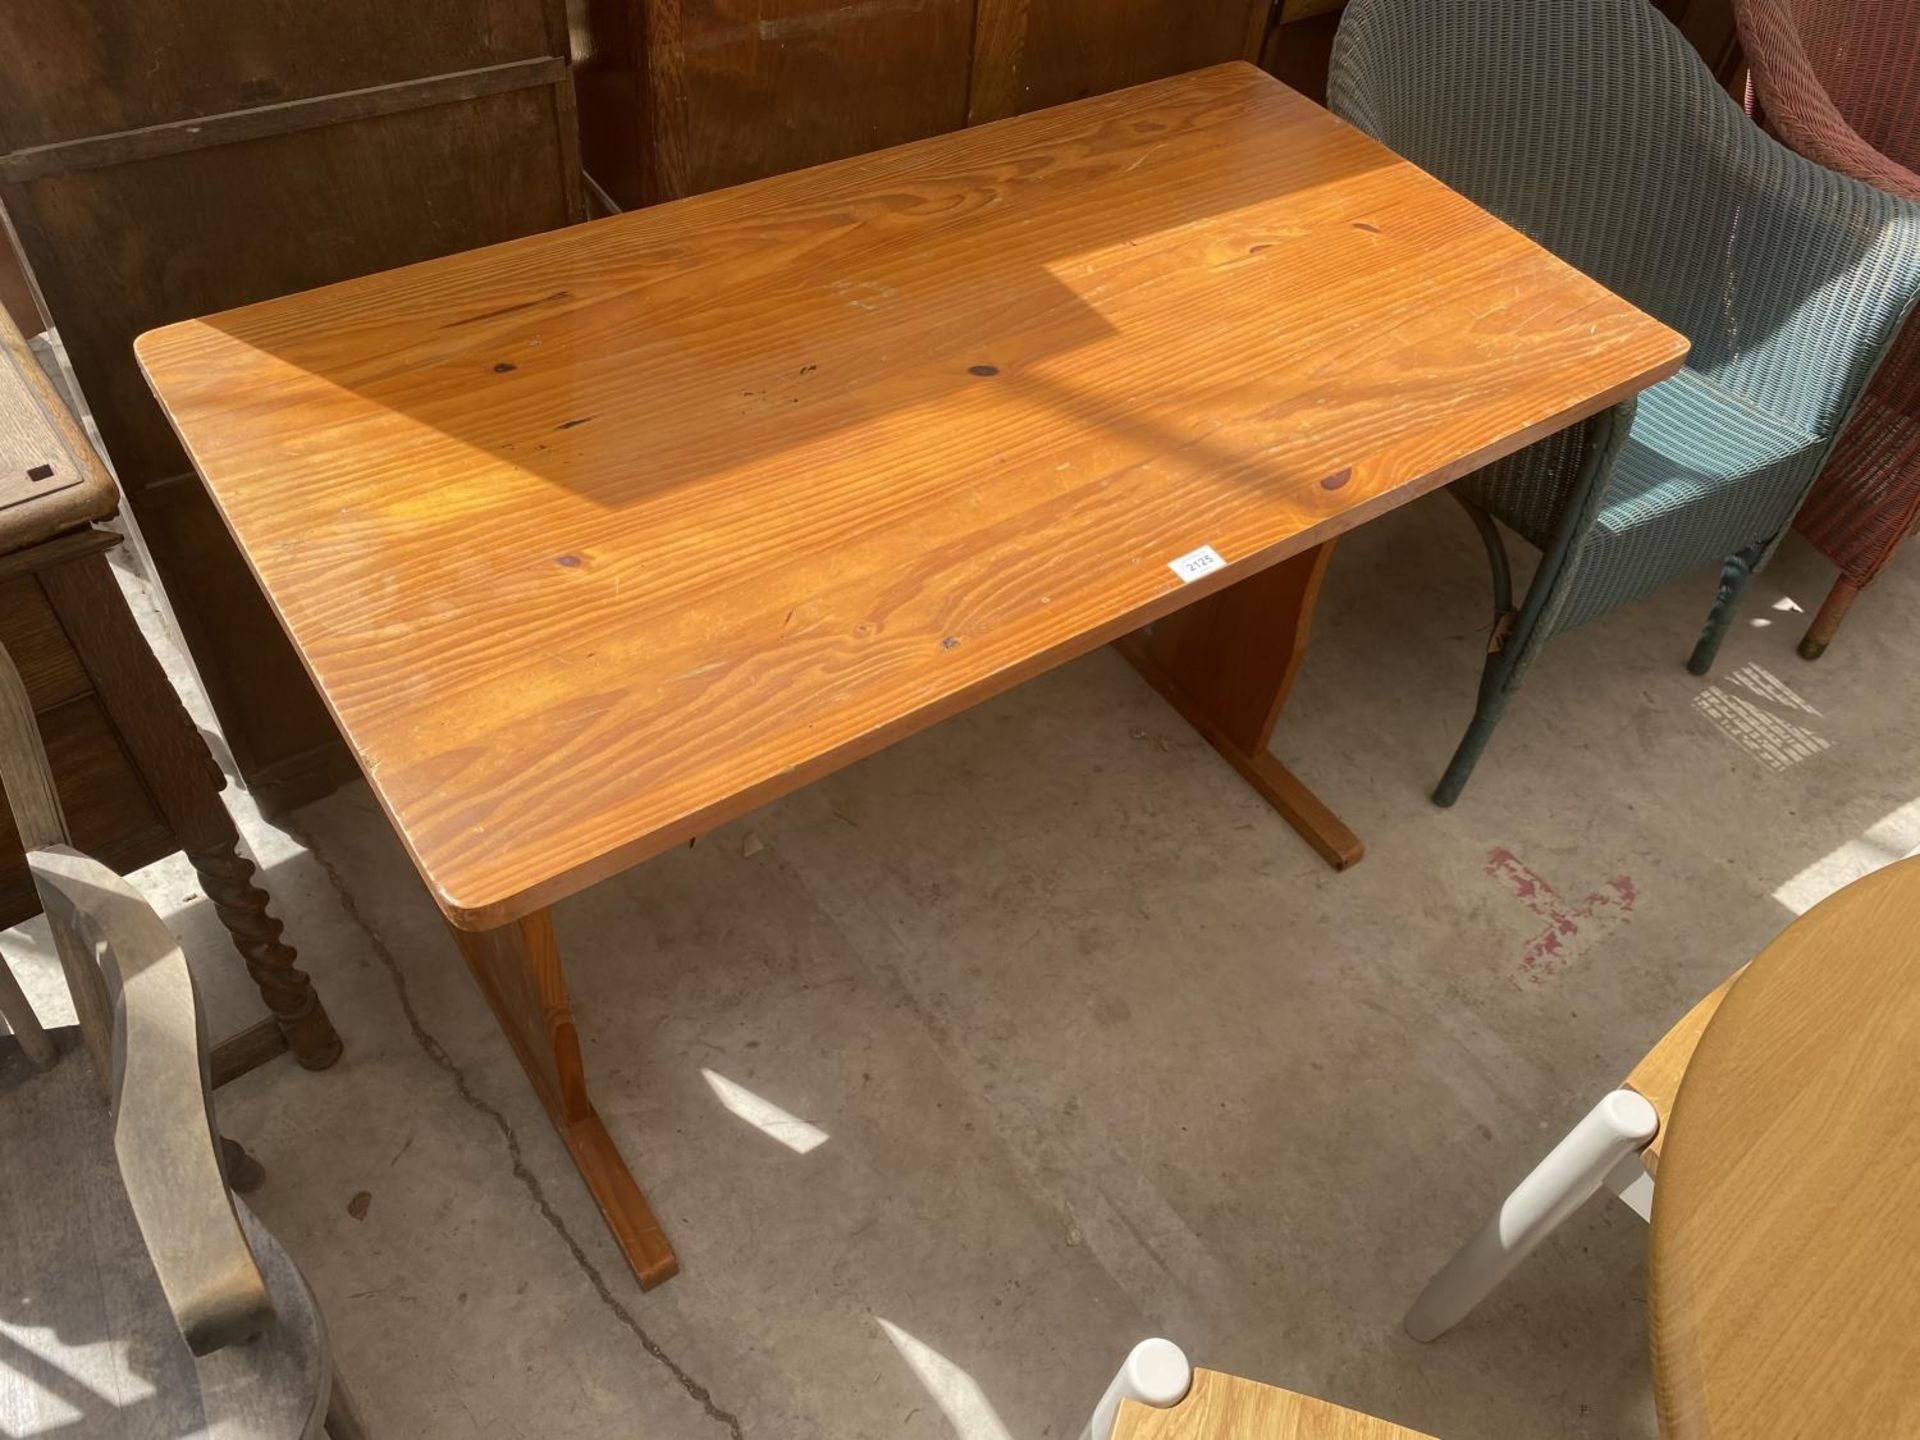 A MODERN PINE KITCHEN TABLE, 44.5X23.5"